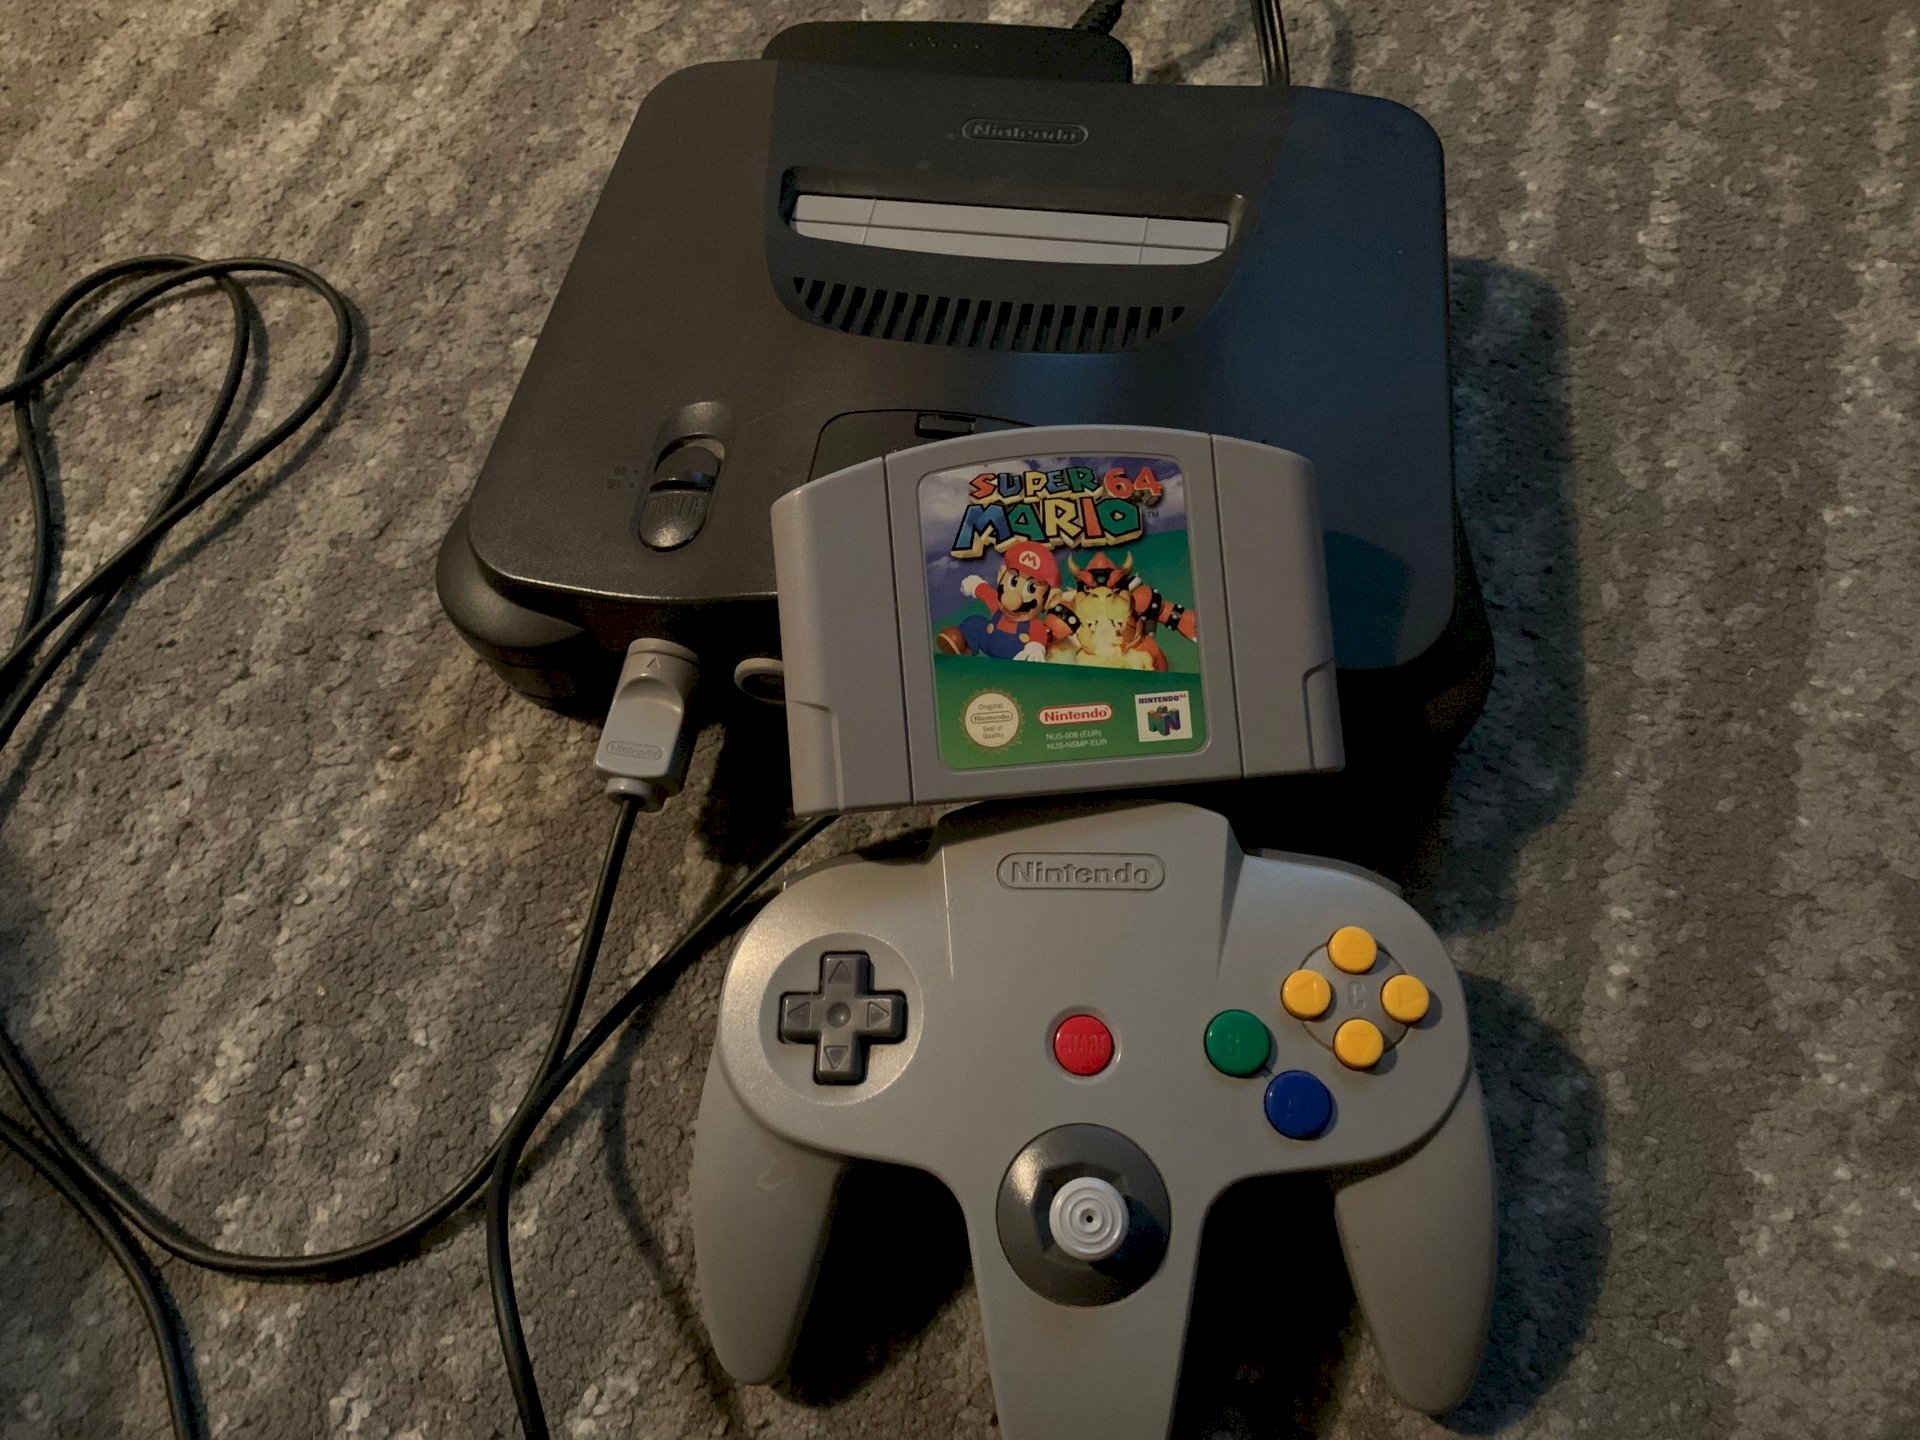 How do you like the Nintendo 64